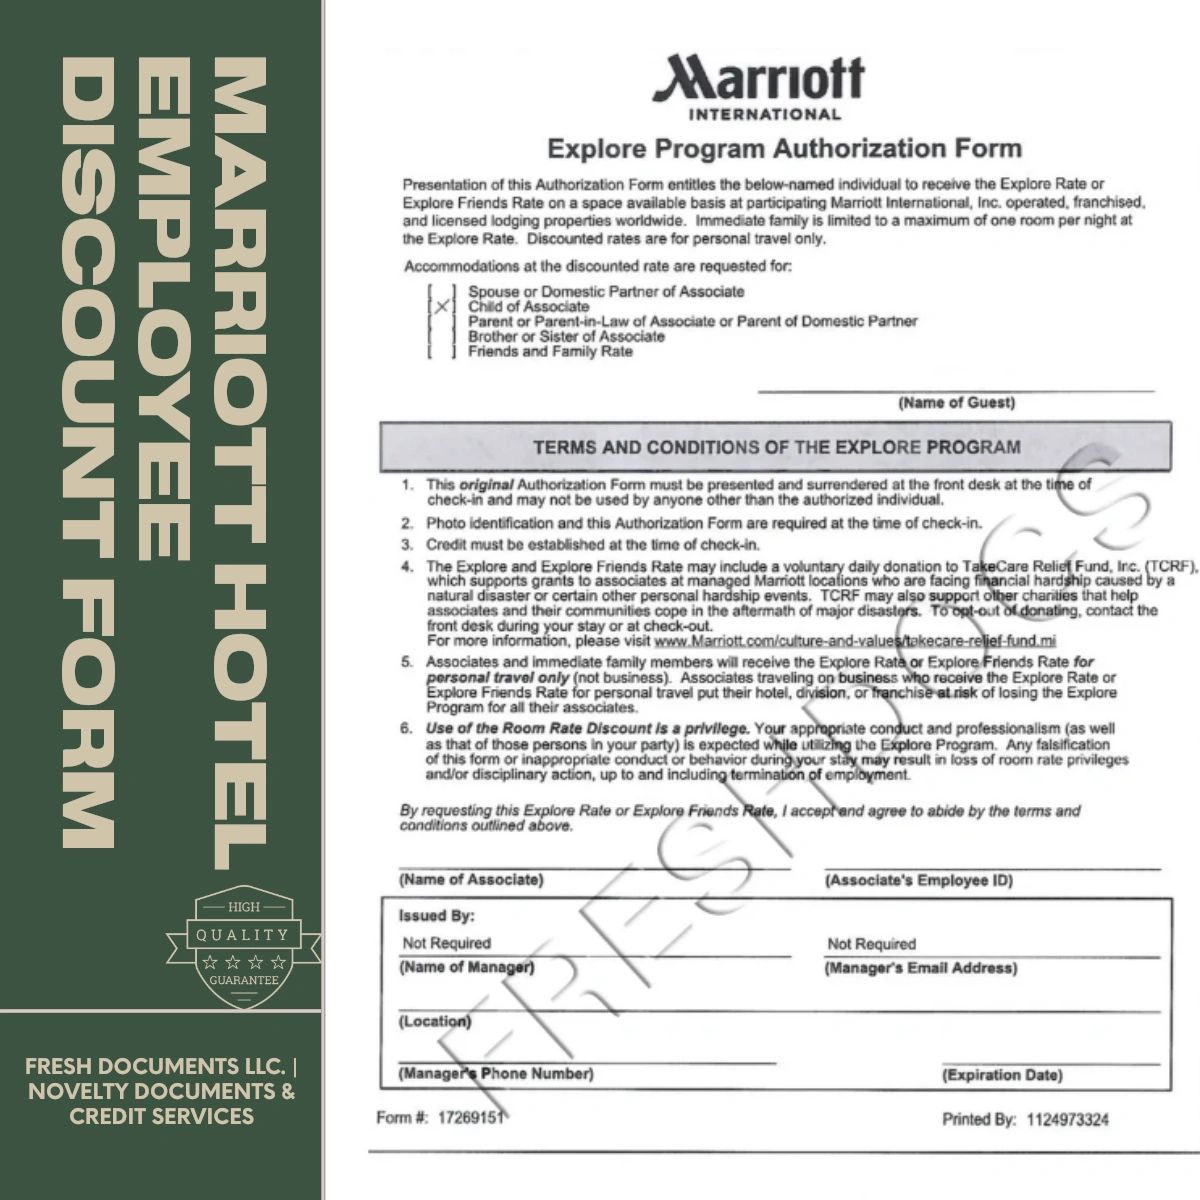 Marriott Hotel Employee Discount Form